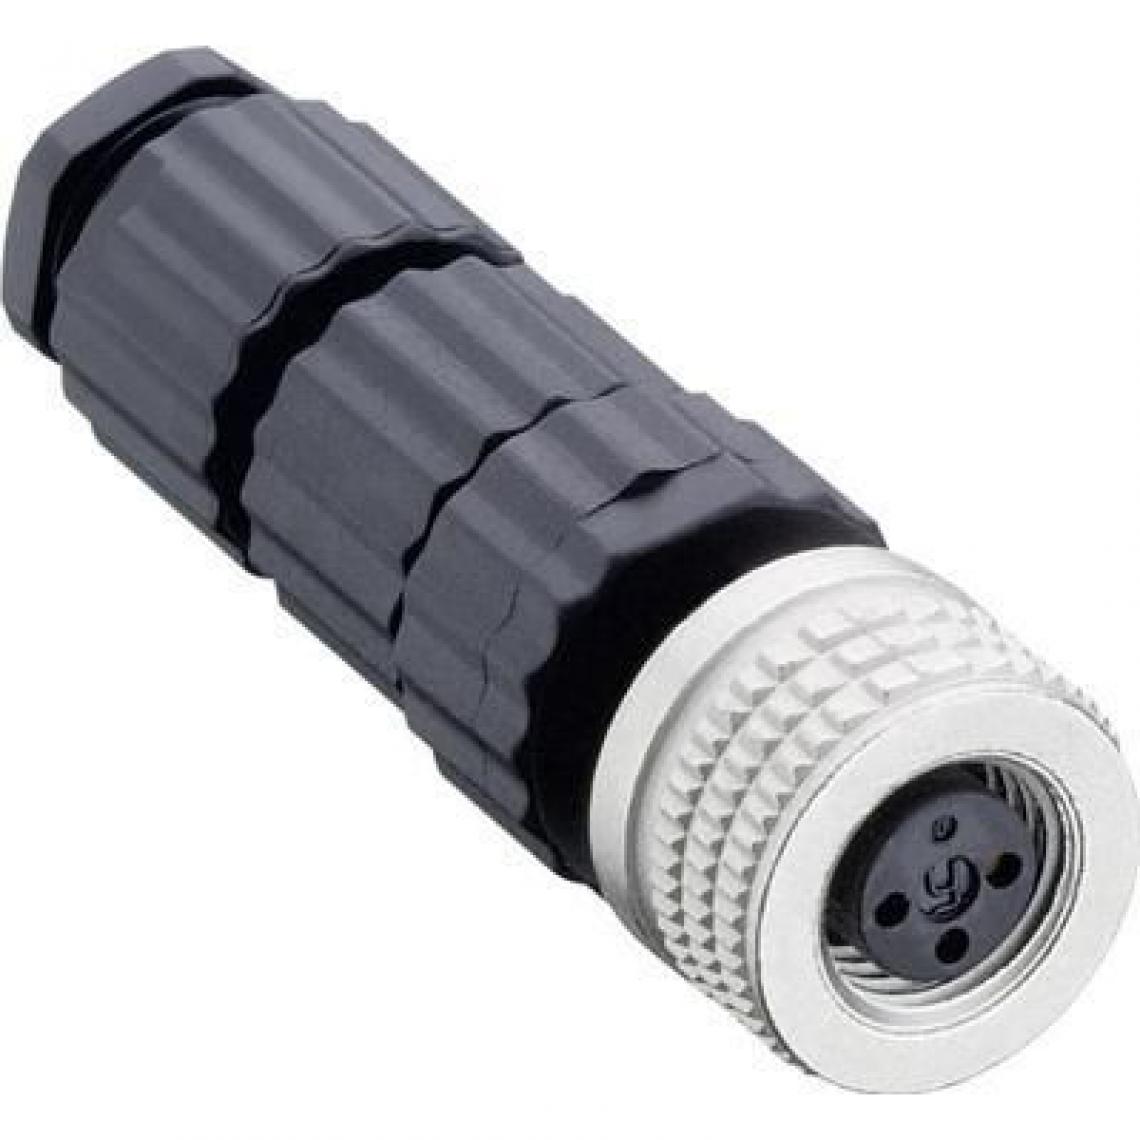 Inconnu - Hirschmann Konfektionierbarer M8-Steckverbinder pour que Sensorik (MiniQuick) noir ELKA 4008V Aus - Accessoires de câblage